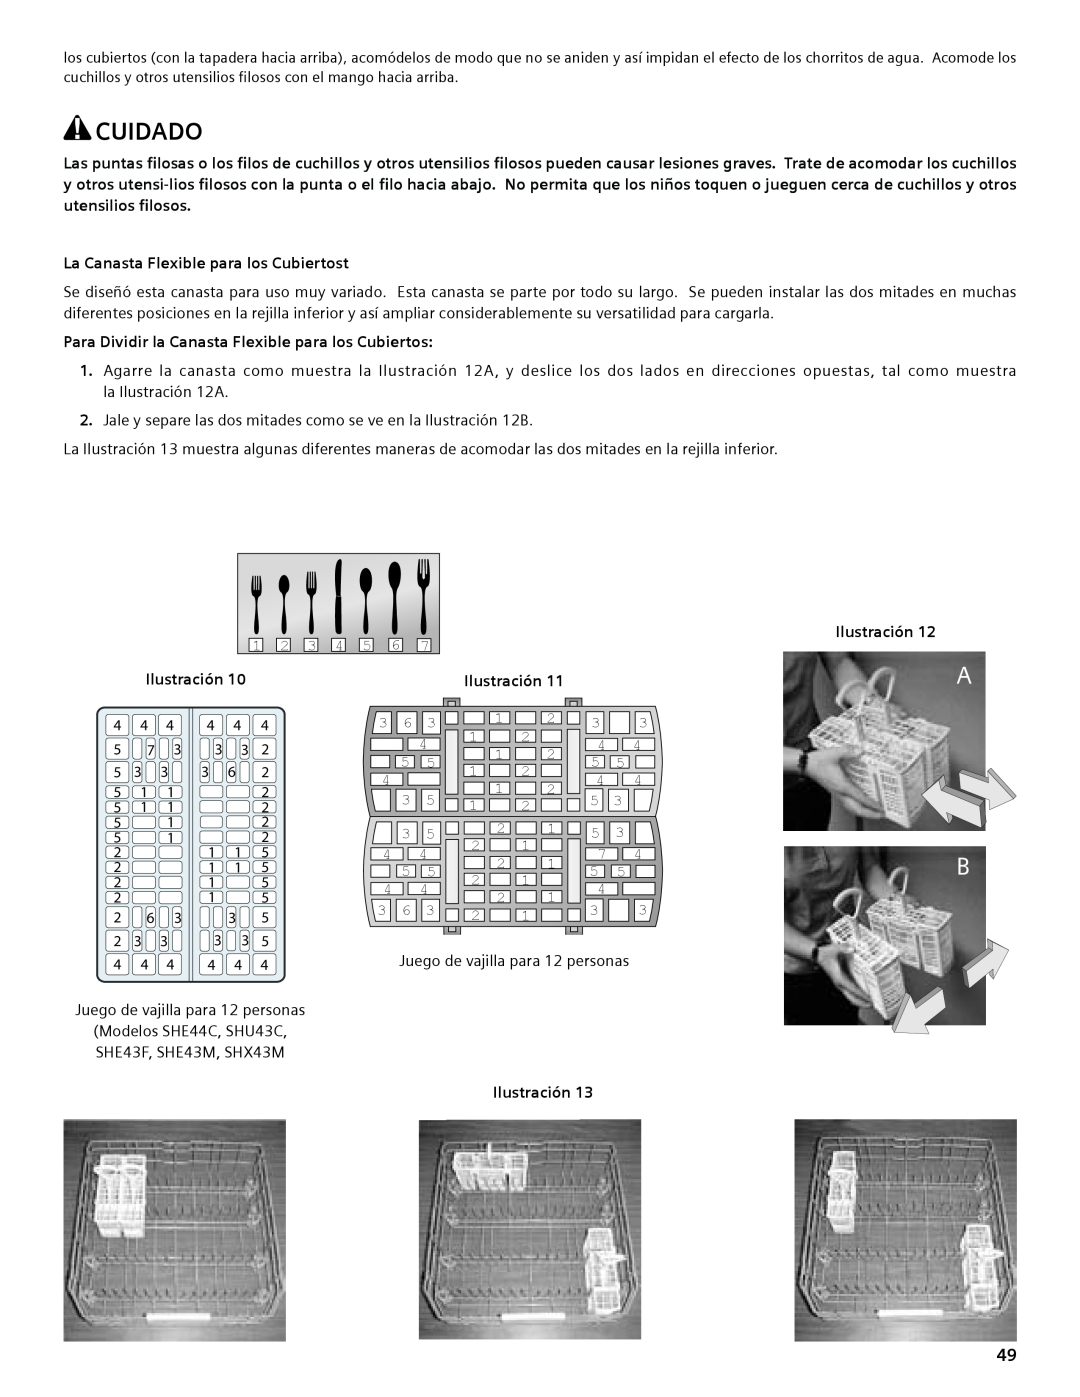 Compaq SHE55C manual La Canasta Flexible para los Cubiertost, Para Dividir la Canasta Flexible para los Cubiertos, Cuidado 